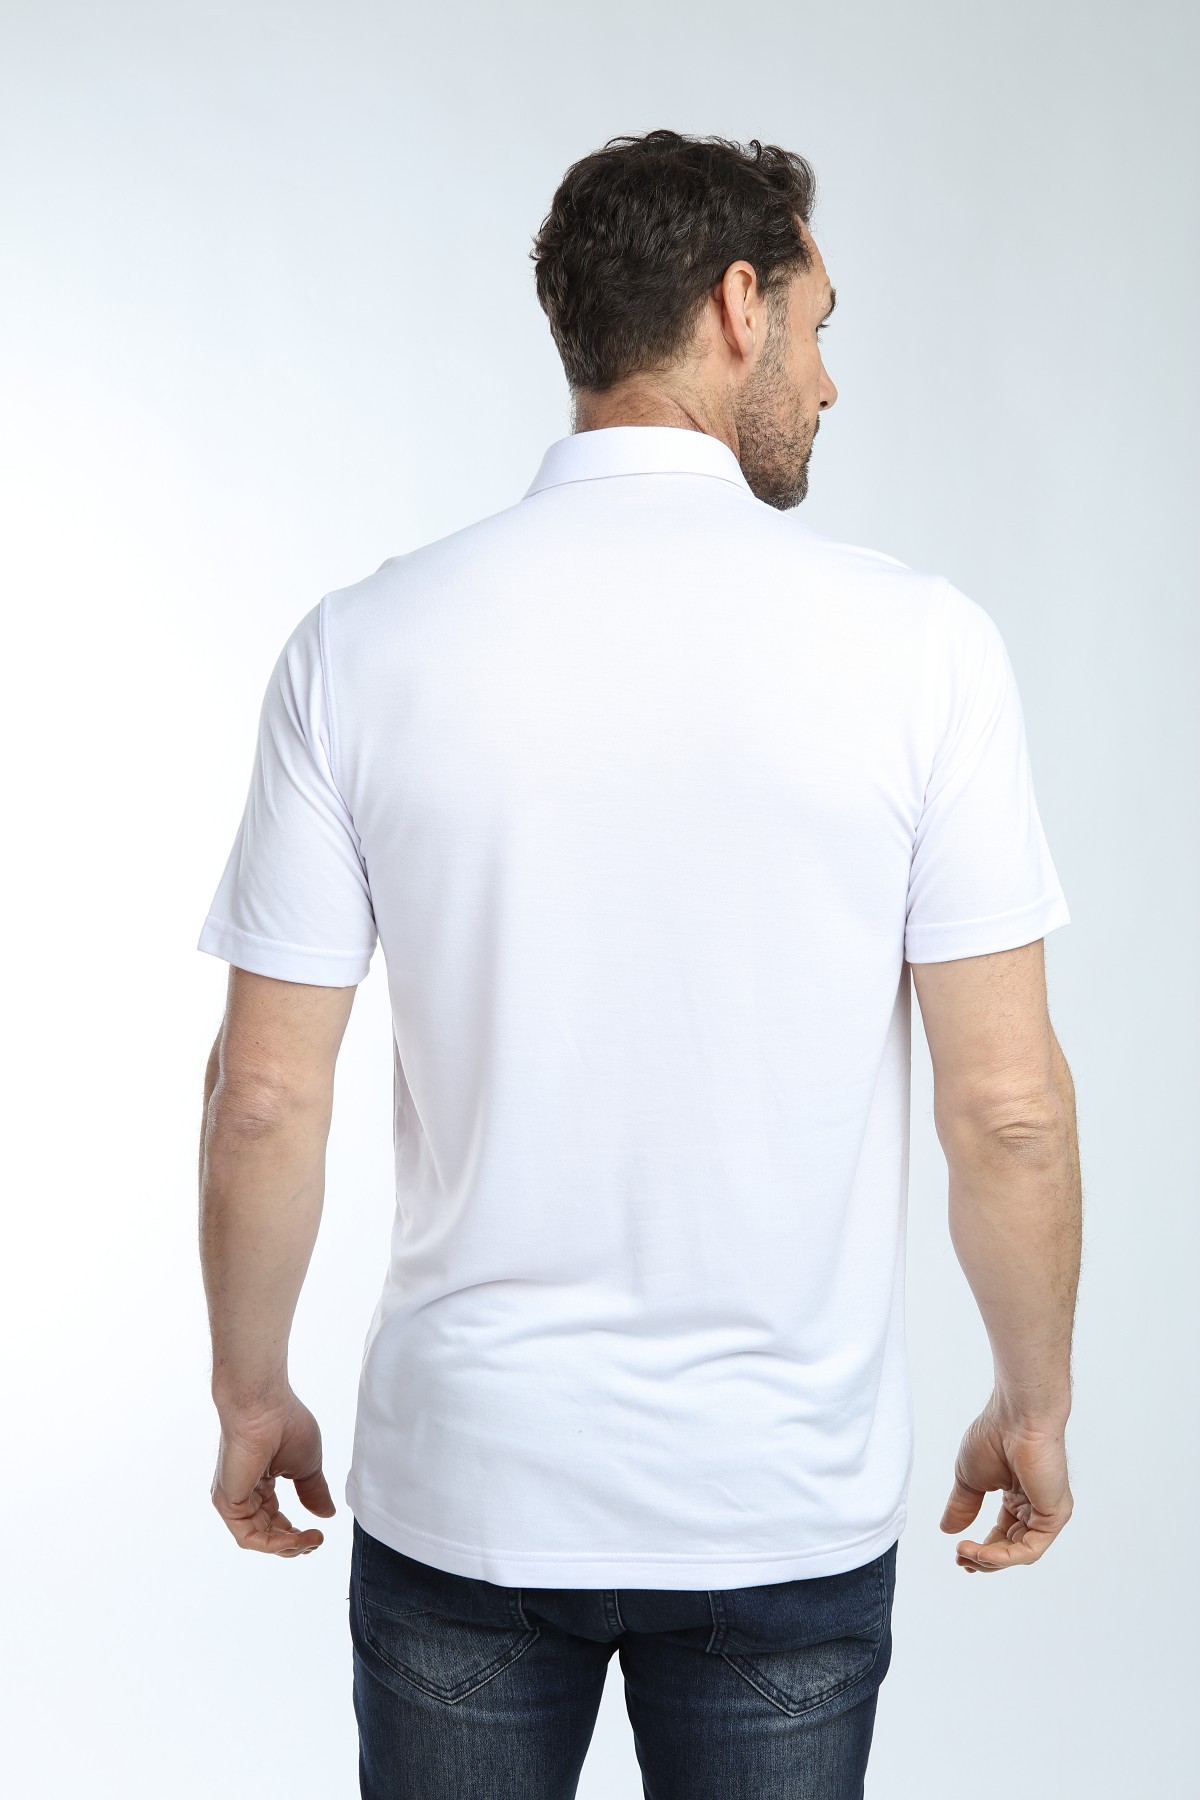 Çizgi Triko Erkek Gömlek Yaka Tişört Düz Renk Günlük Cep Detaylı - BEYAZ